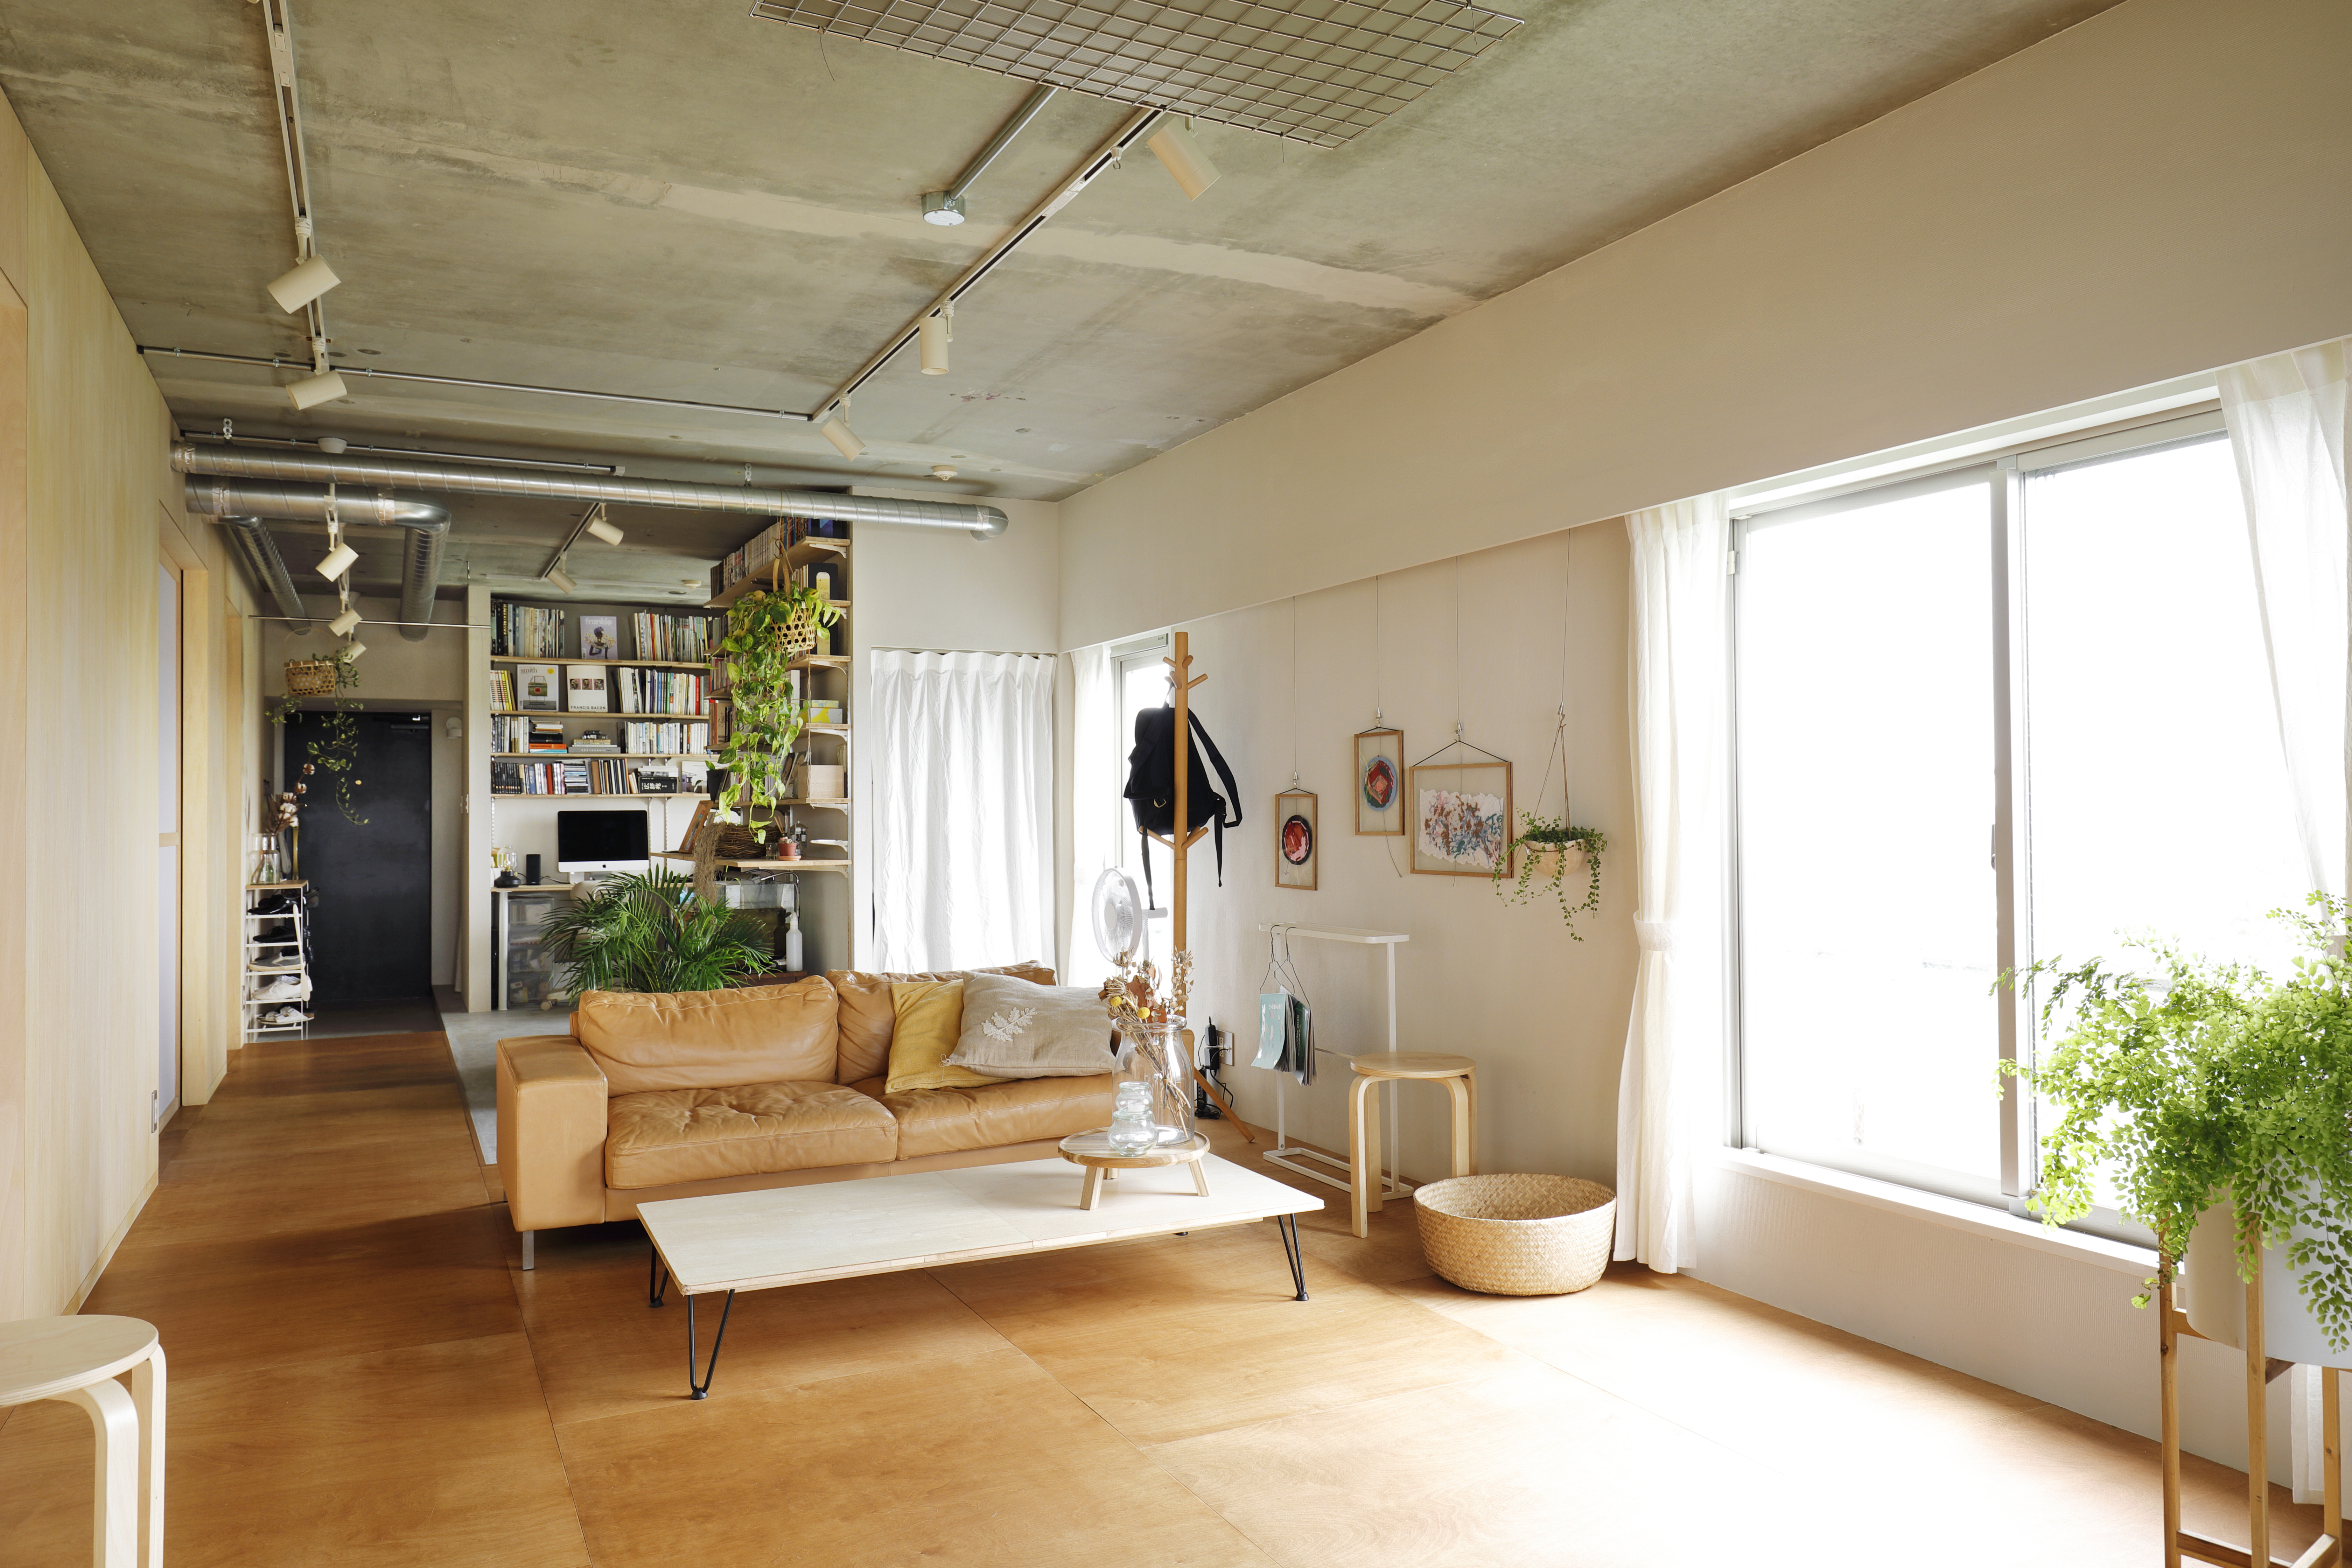 2人暮らしにピッタリなマンション間取り事例集 東京でおしゃれリノベーション リノベーションのshuken Re マンション 住宅 中古物件をリフォームやリノベで住みやすくデザインし施工します